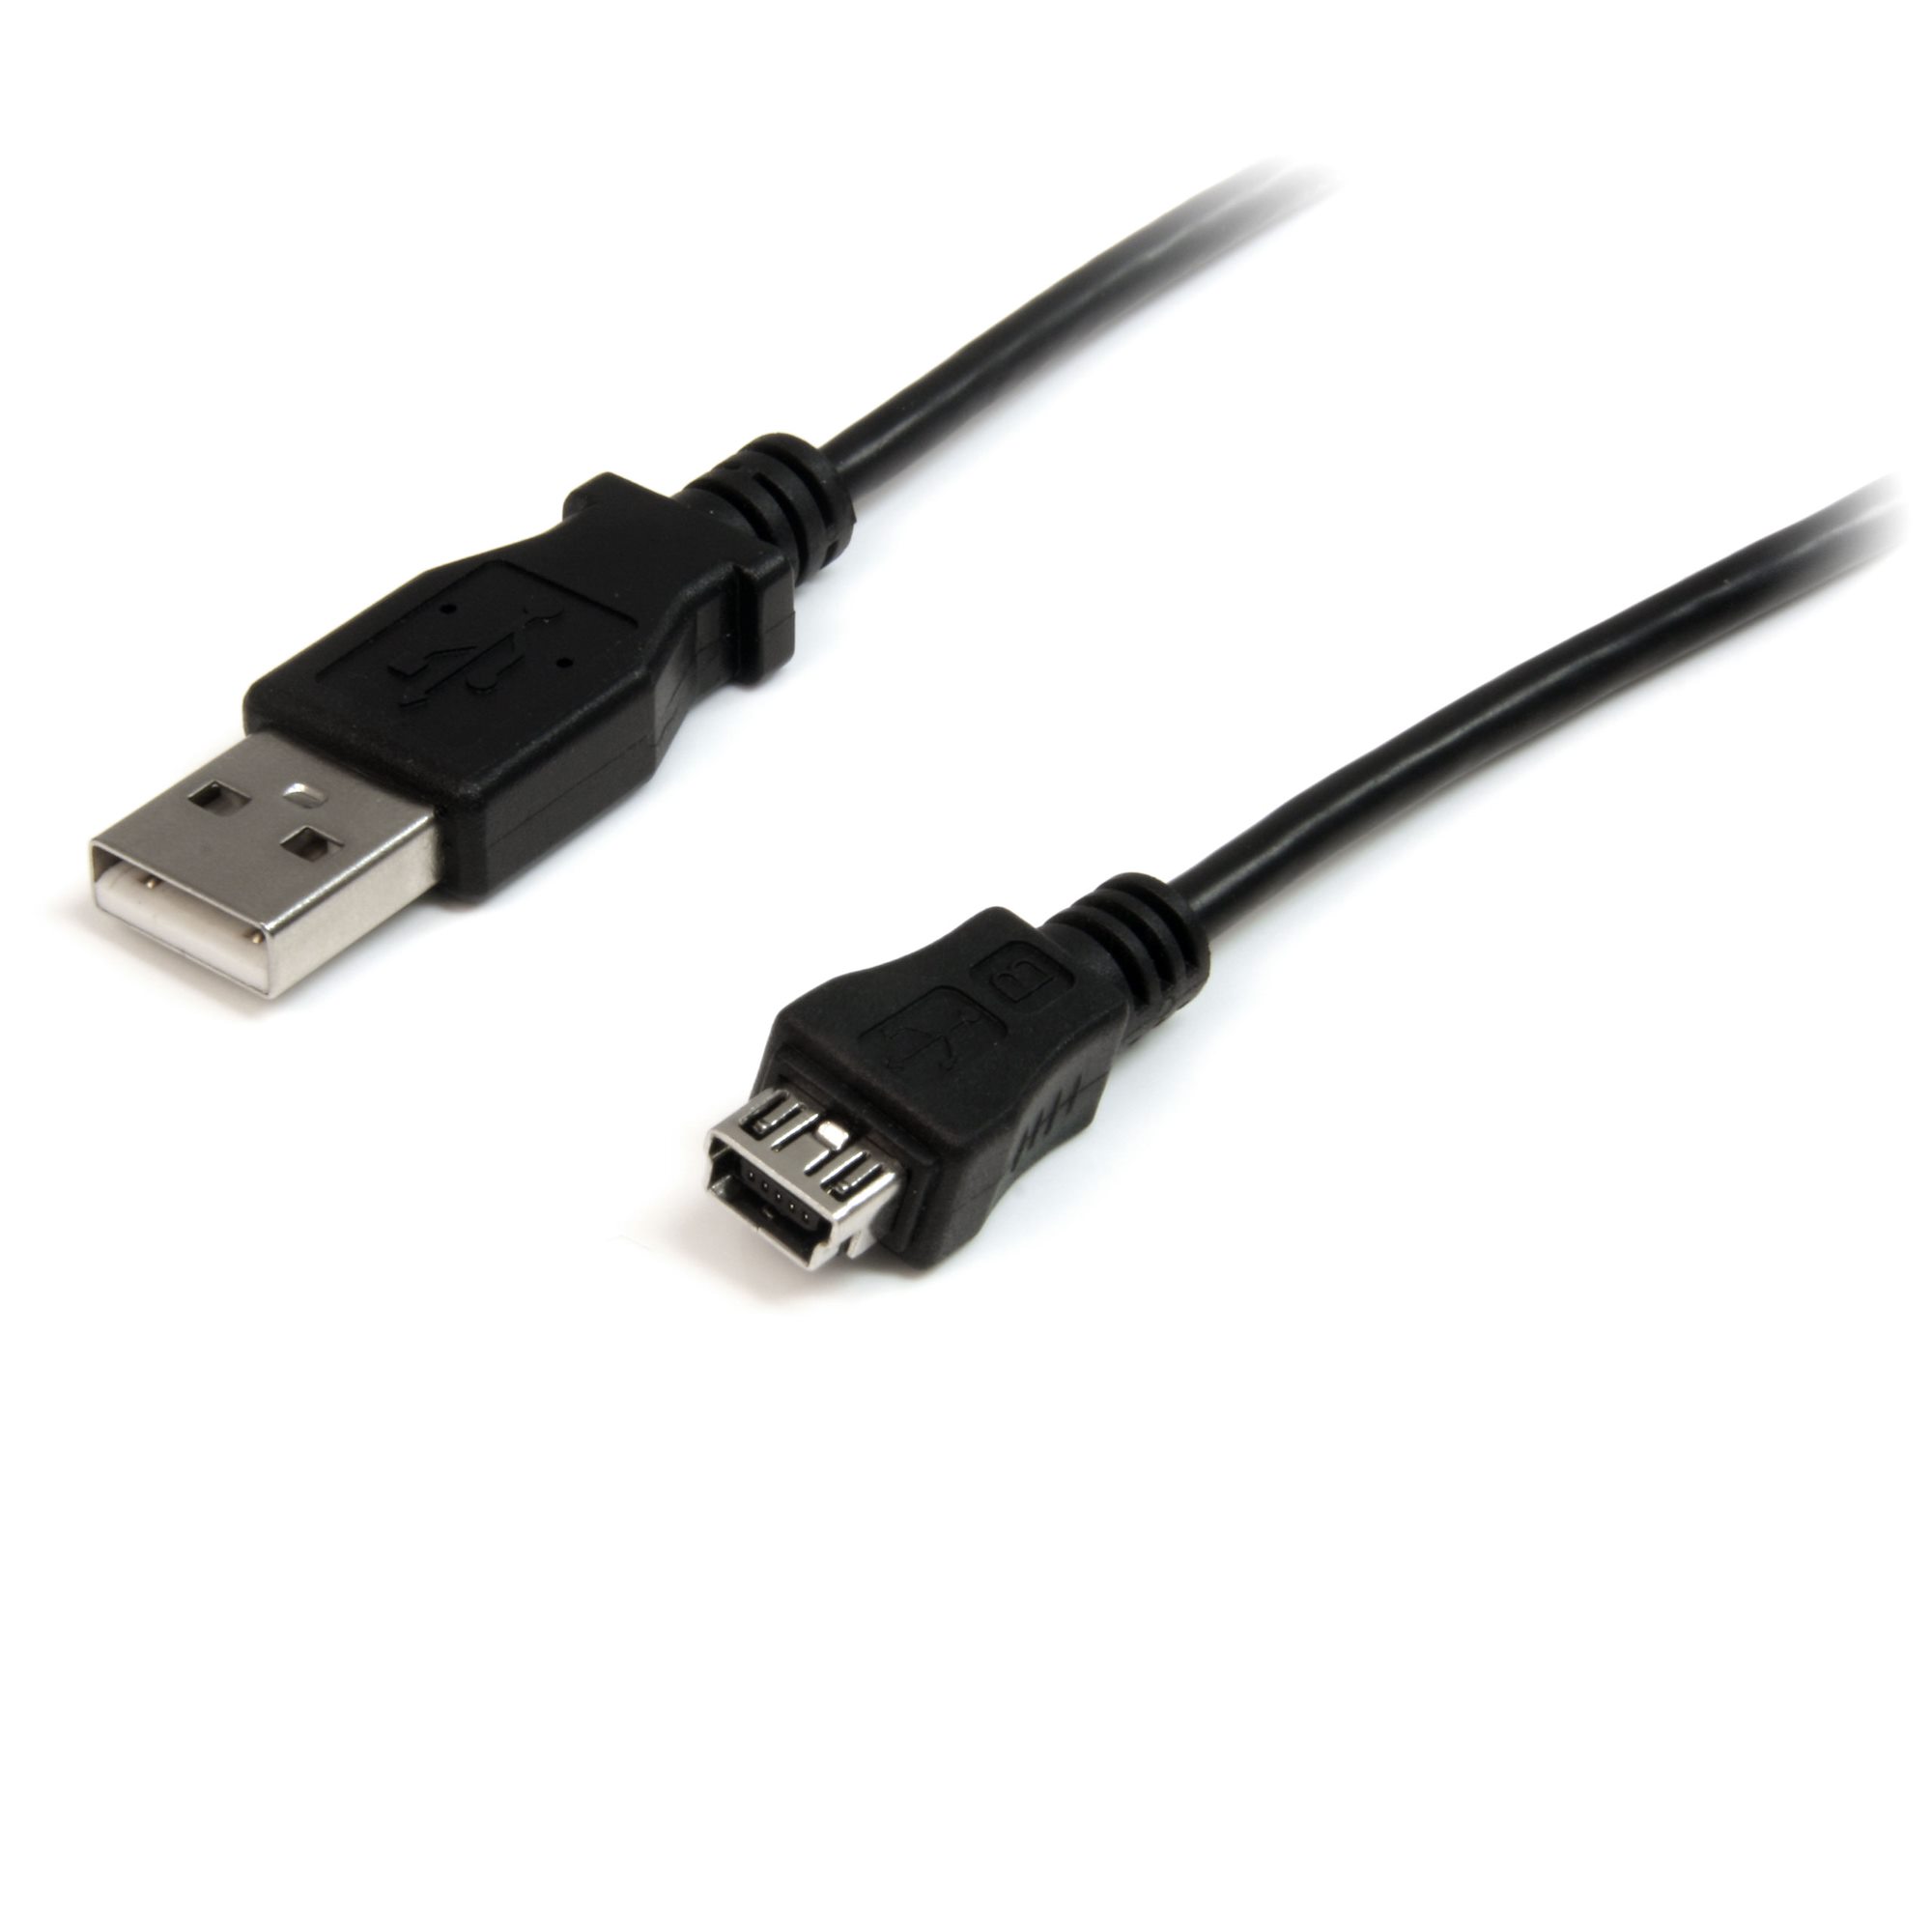 Днс usb c. Mini USB Тип b (USB 2.0). Mini USB 1.1. Rode NT-USB Mini, разъем: USB. STARTECH Micro USB to Mini USB Adapter m/f.